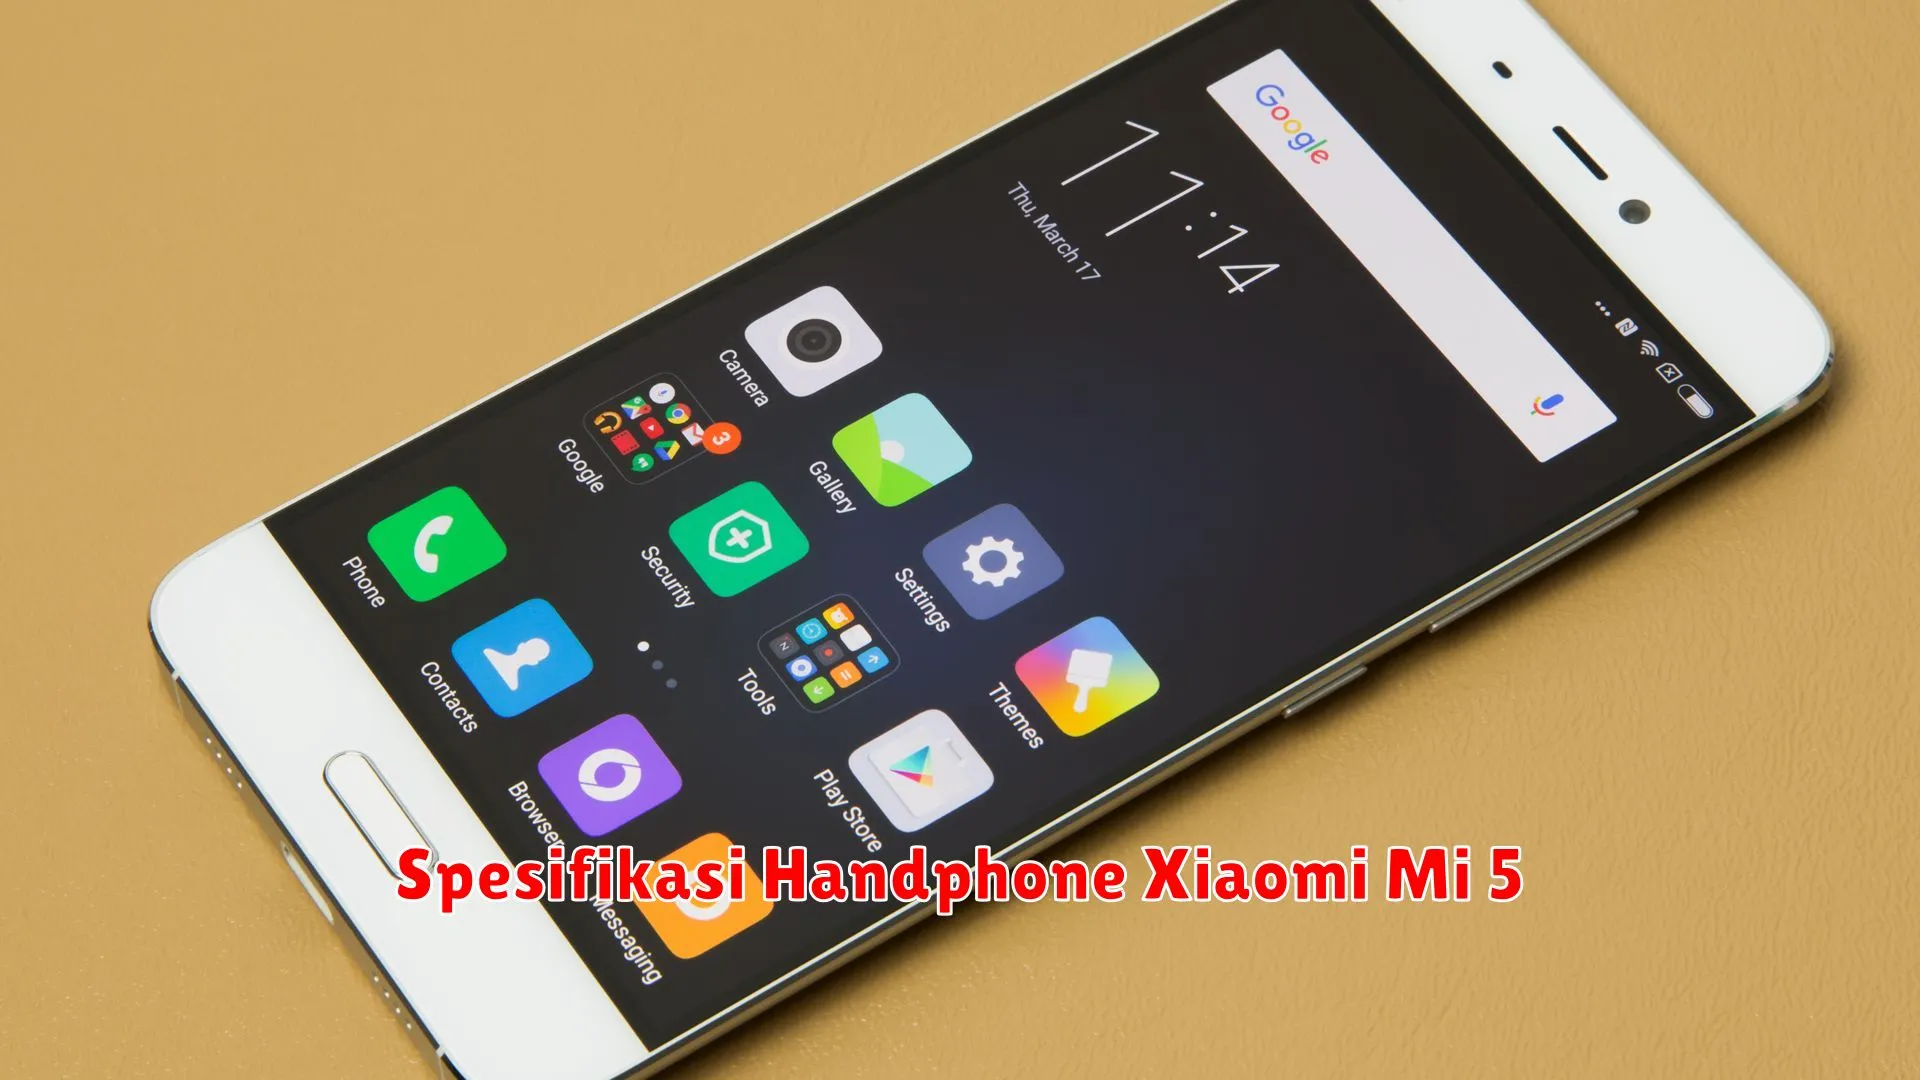 Spesifikasi Handphone Xiaomi Mi 5